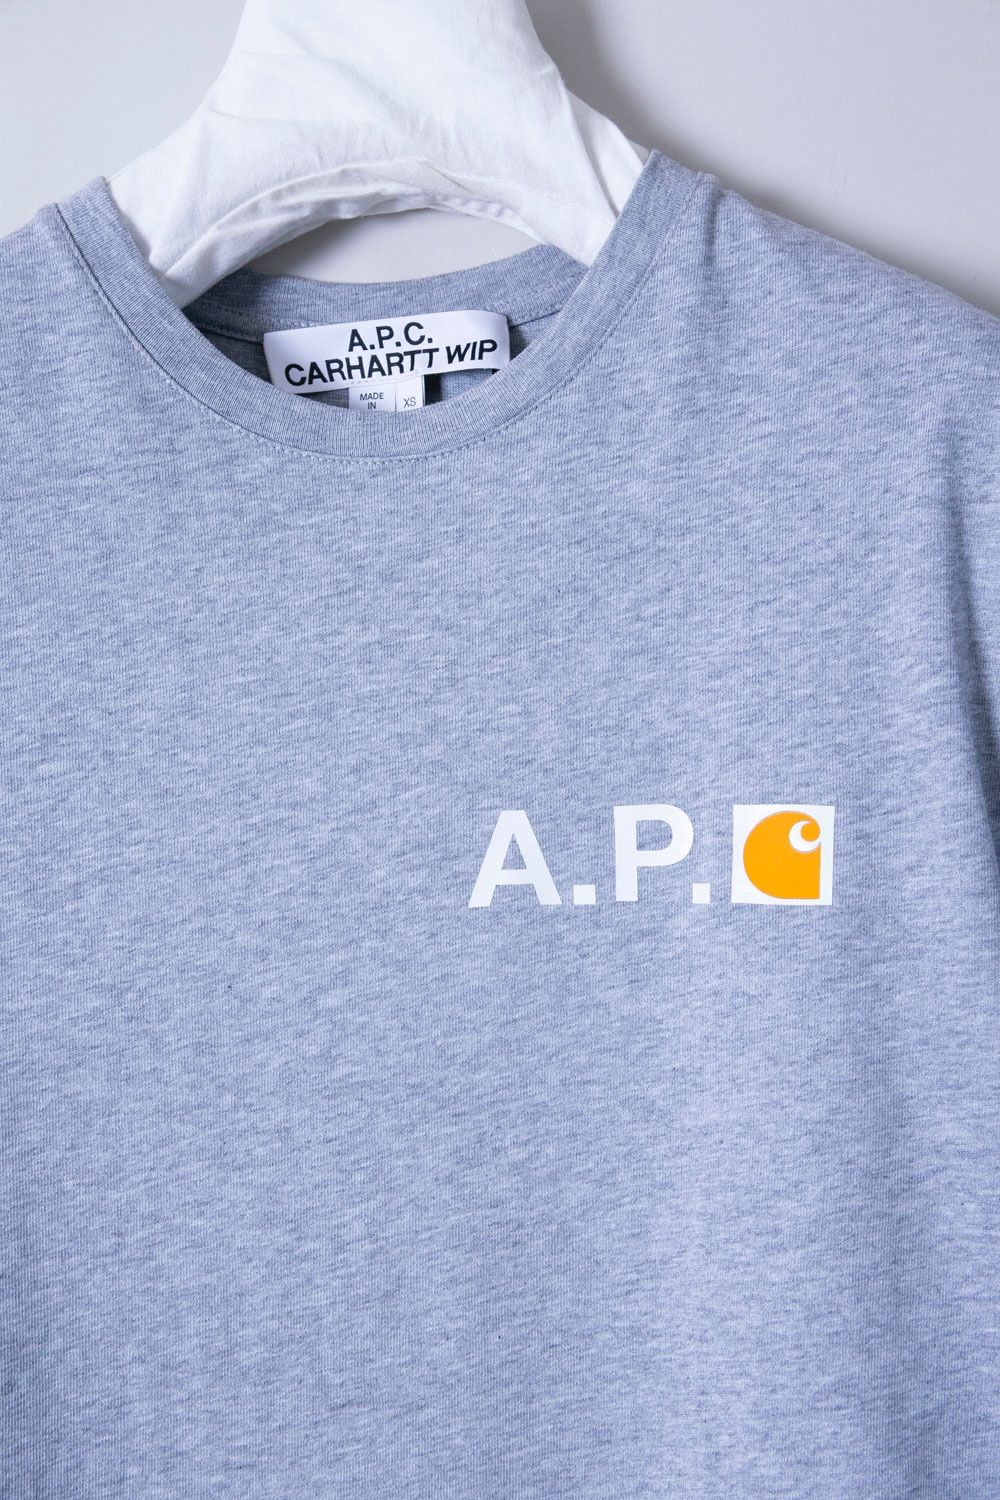 A.P.C. × CARHARTT WIP アーペーセー×カーハート Tシャツ